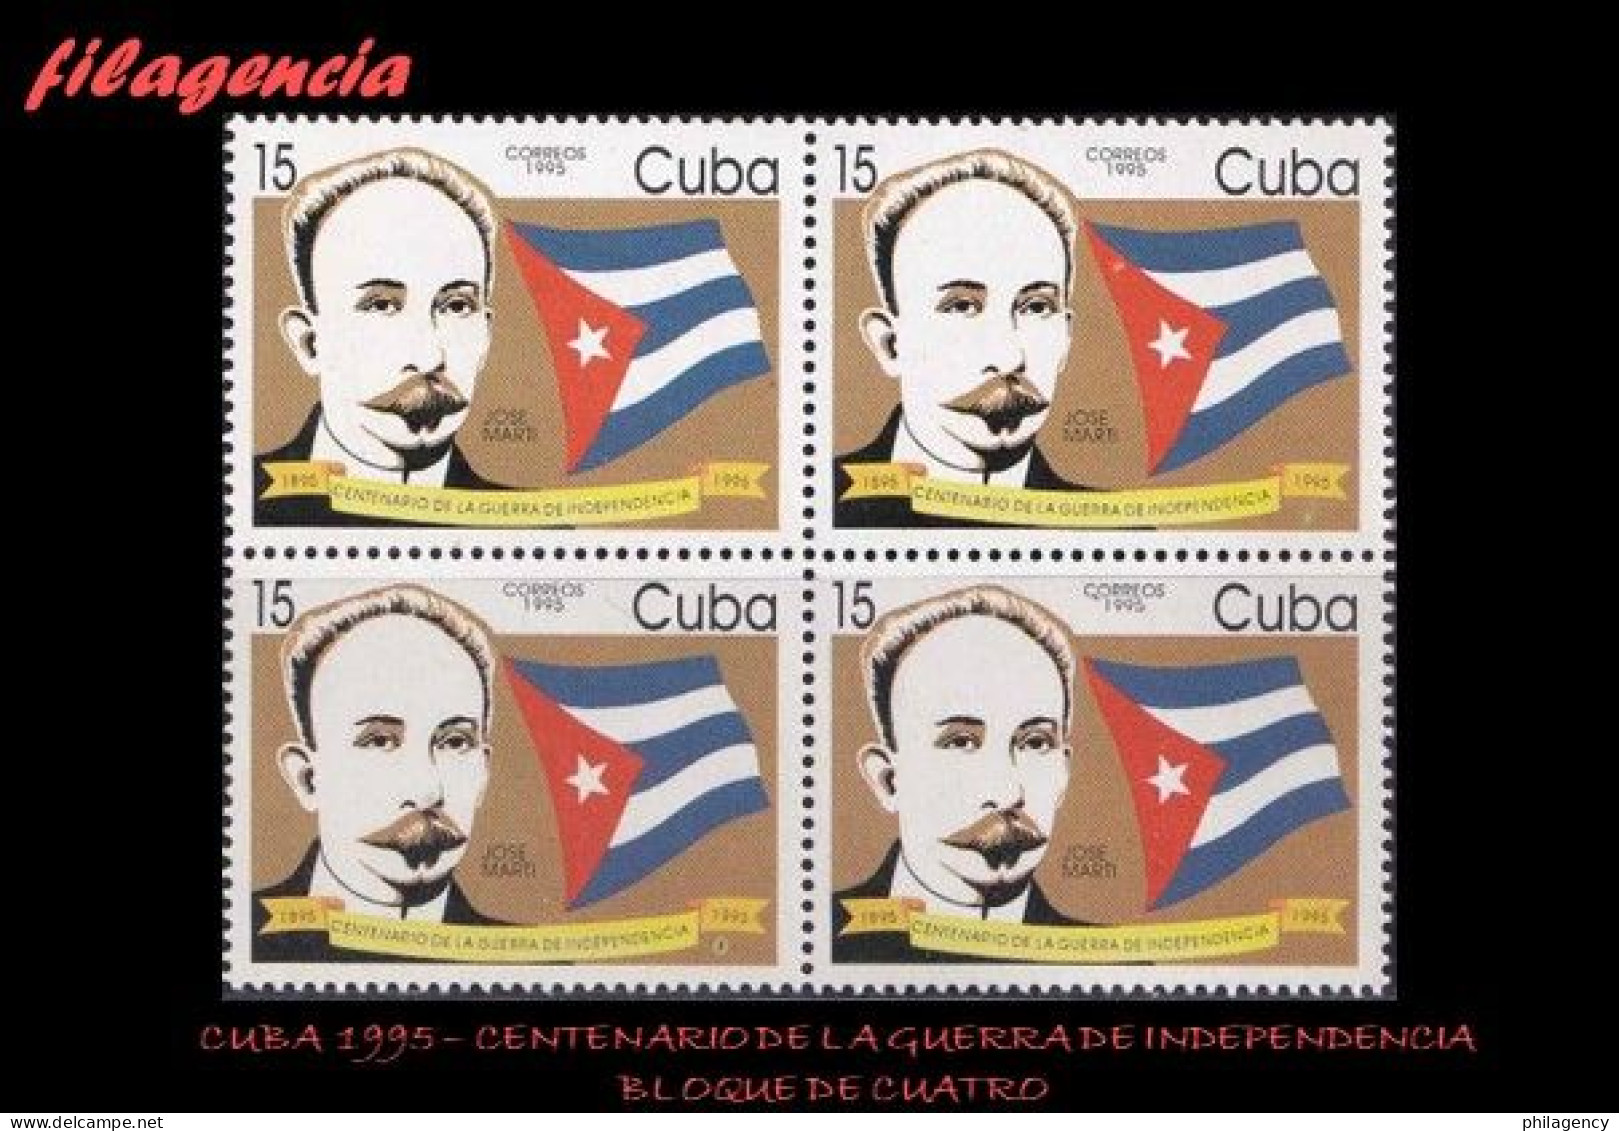 CUBA. BLOQUES DE CUATRO. 1995-02 CENTENARIO DE LA GUERRA DE INDEPENDENCIA - Nuevos